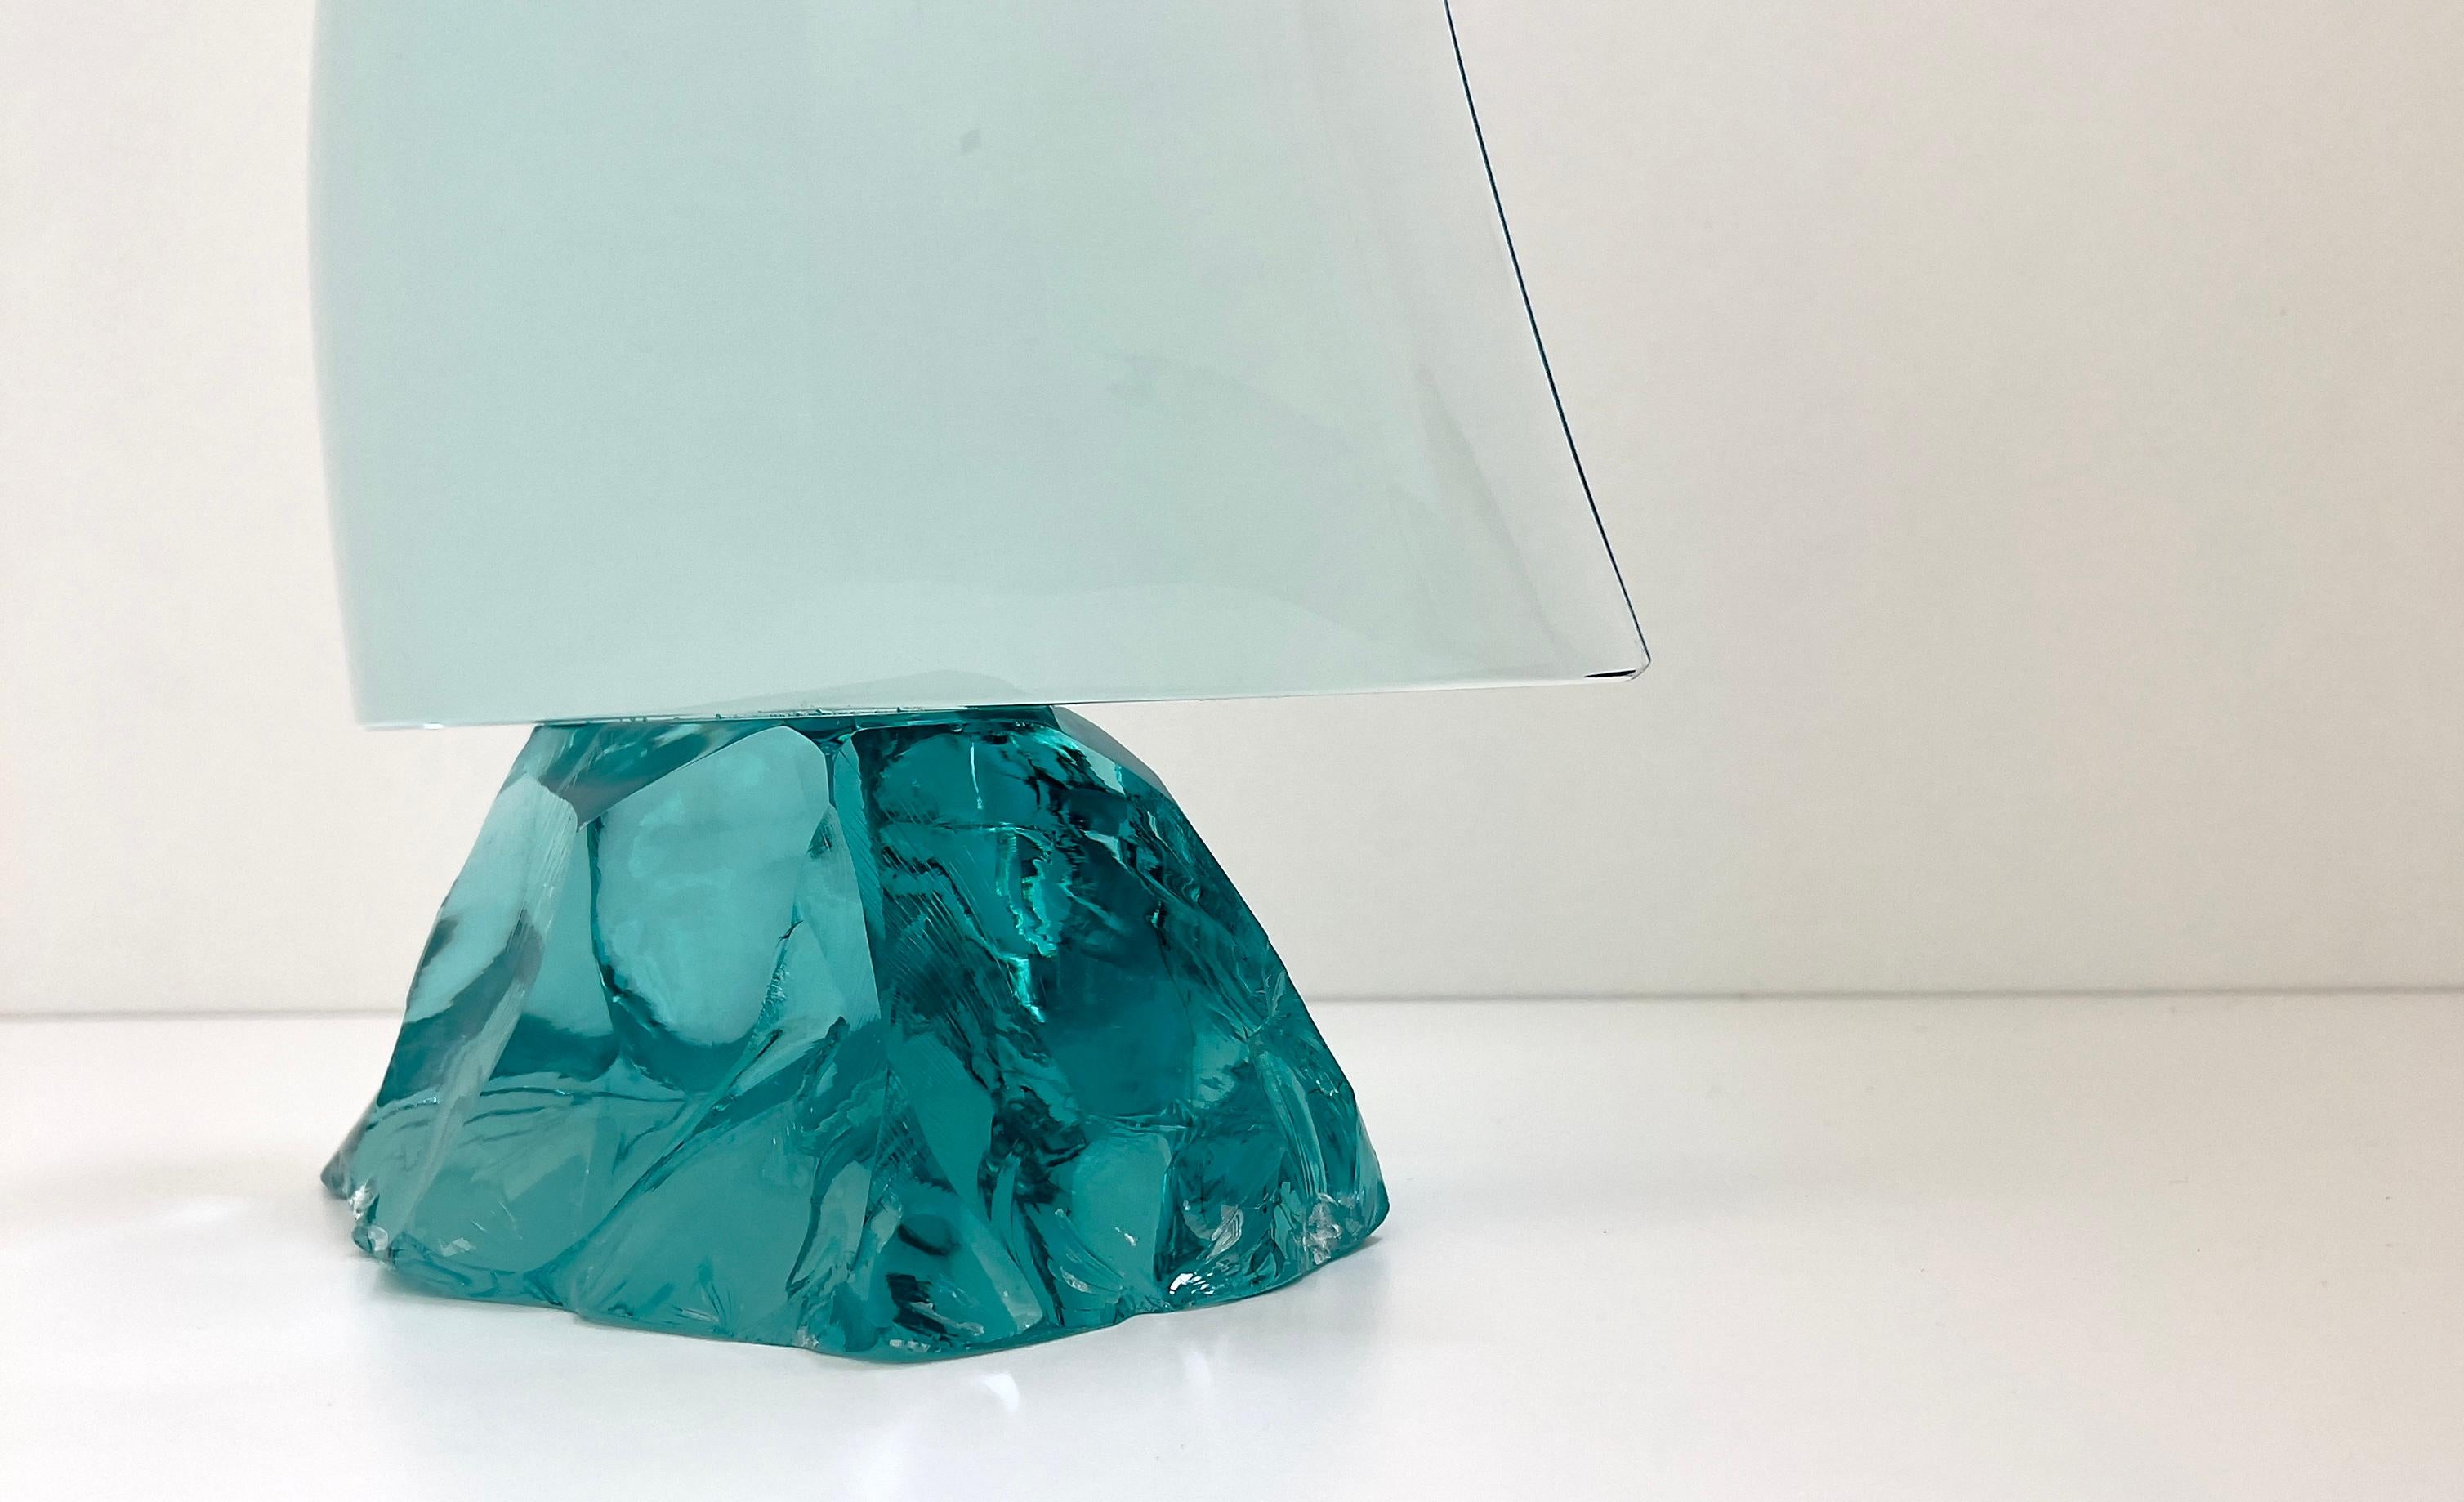 2023 Sammlung von Dekorationsobjekten, signiert von Ghirò Studio (Mailand).
Der Naturkristall hat eine hohe Transparenz mit aquamarinfarbenen Reflexen, er wurde gebogen und handgefertigt, um ein Segel darzustellen. Jedes Segel ist eine echte